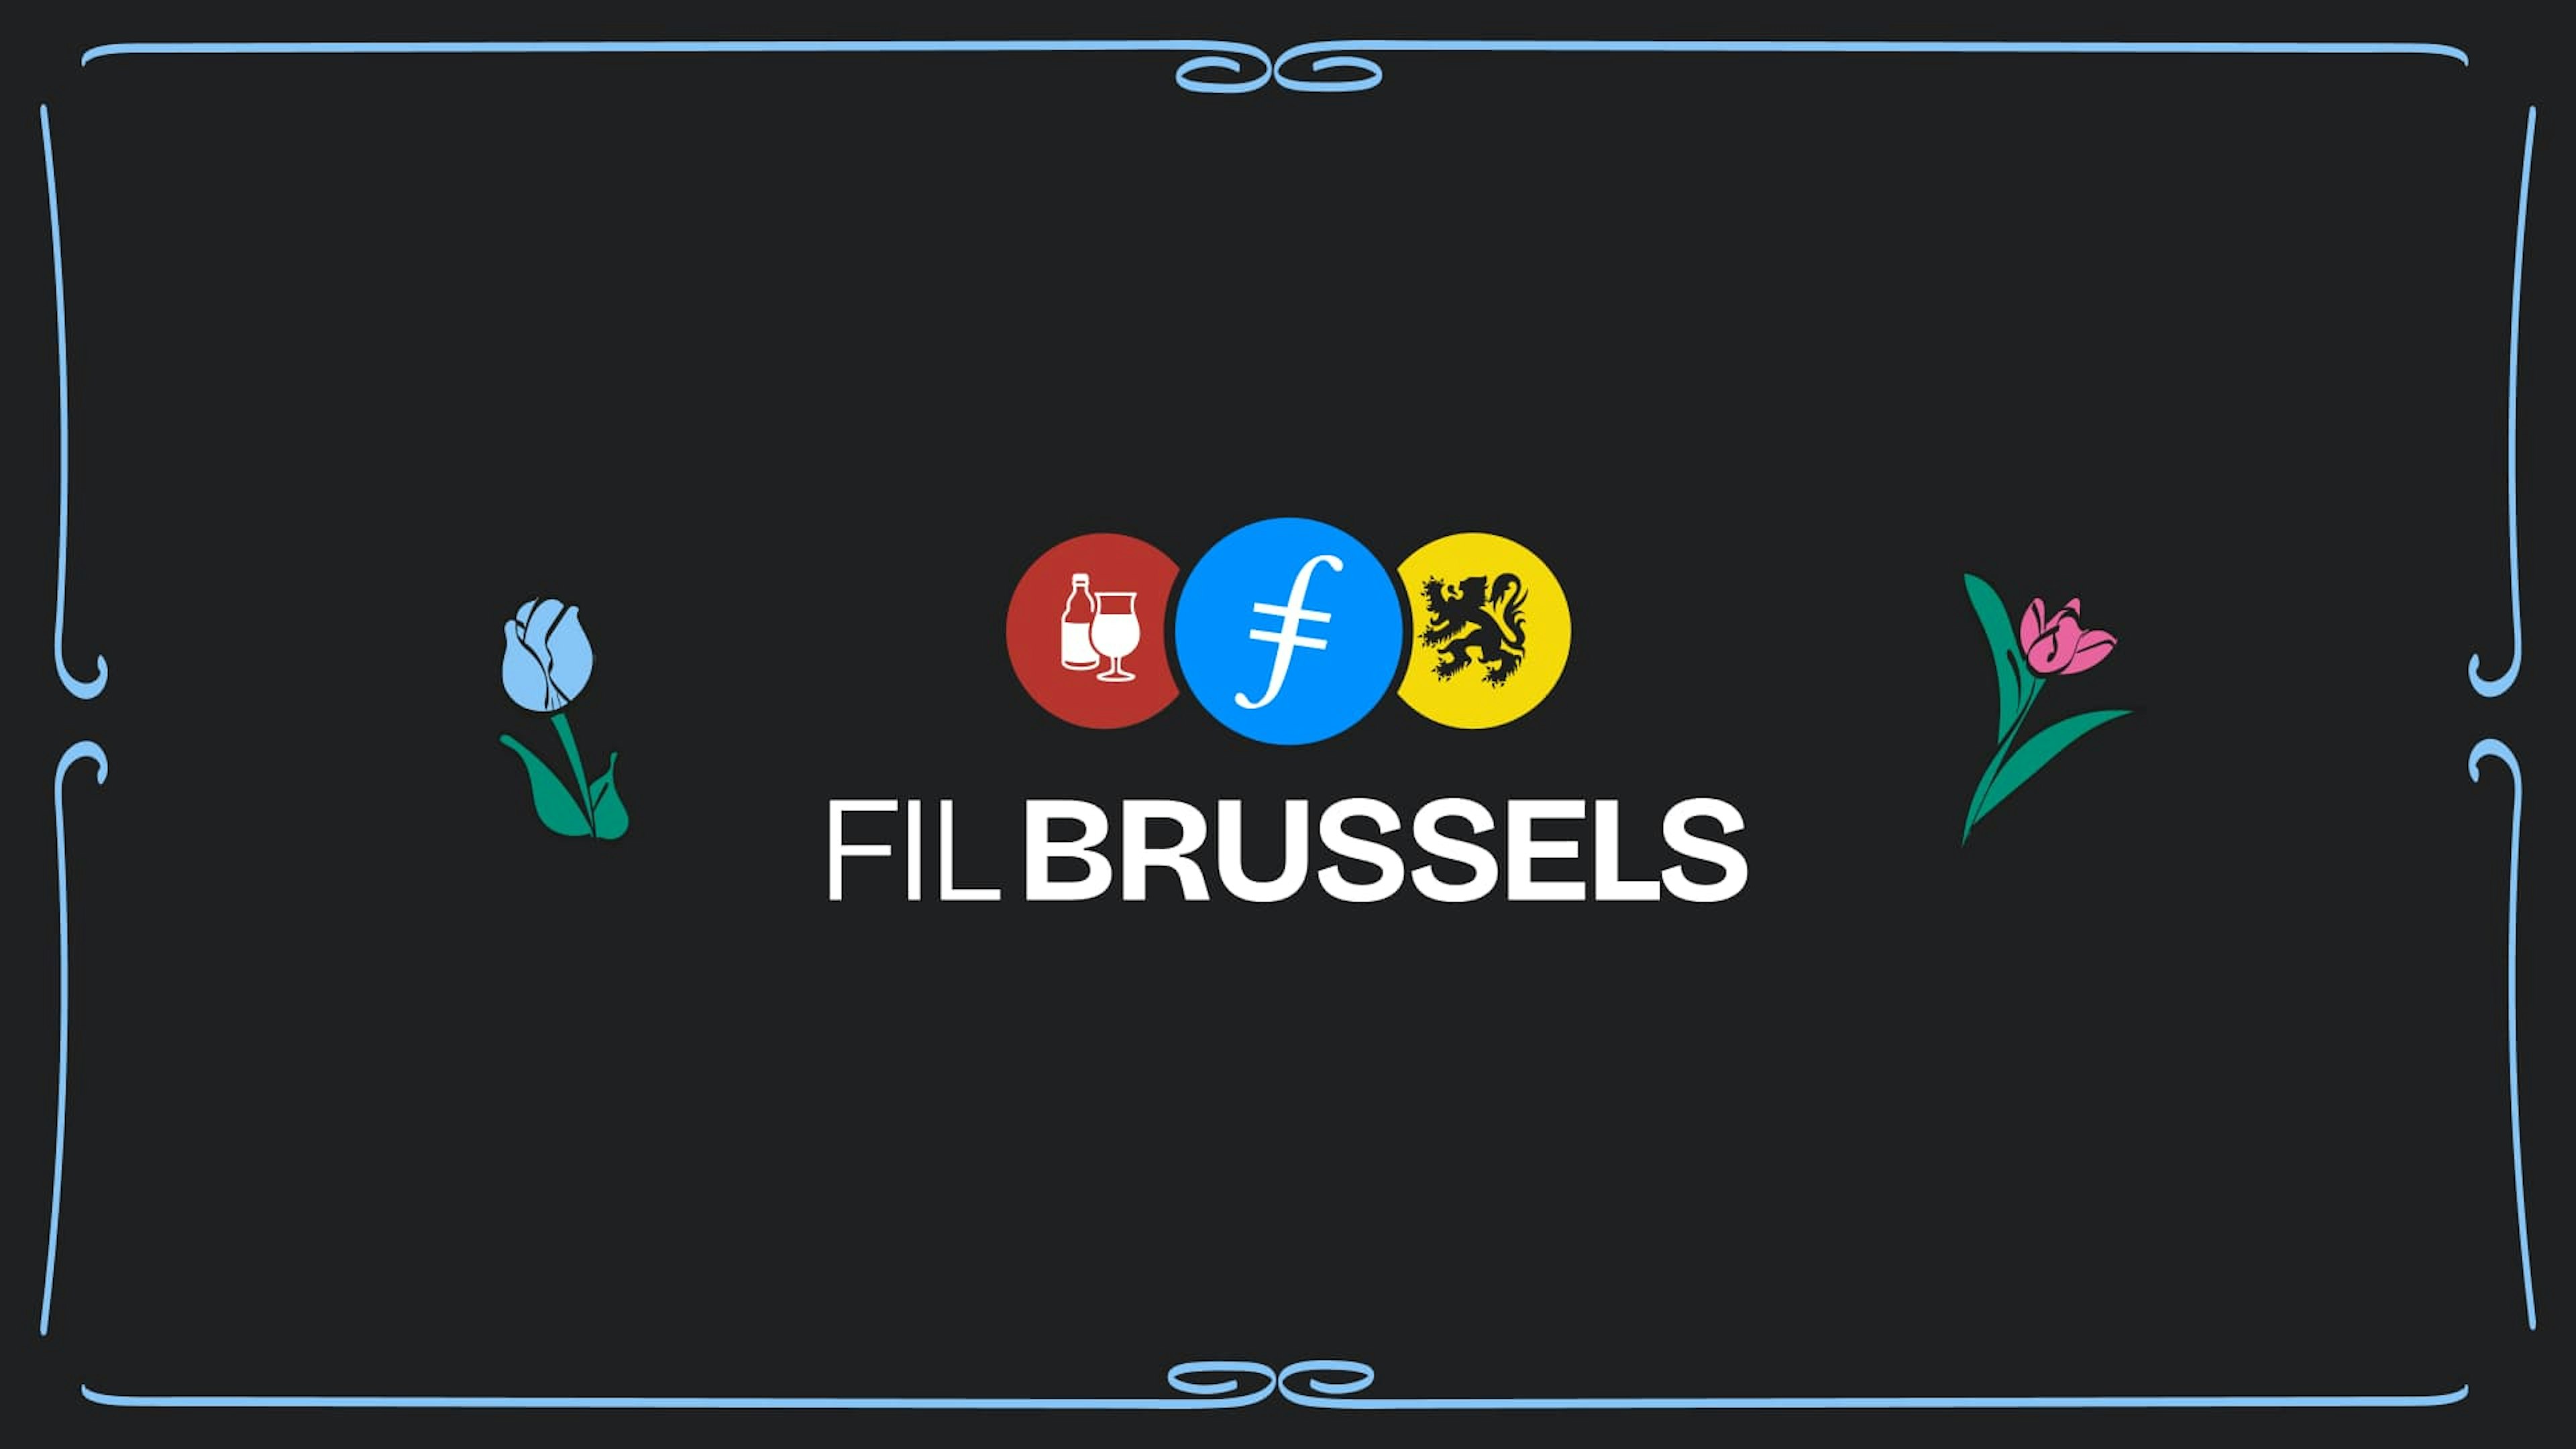 FIL Brussels logo on black background.